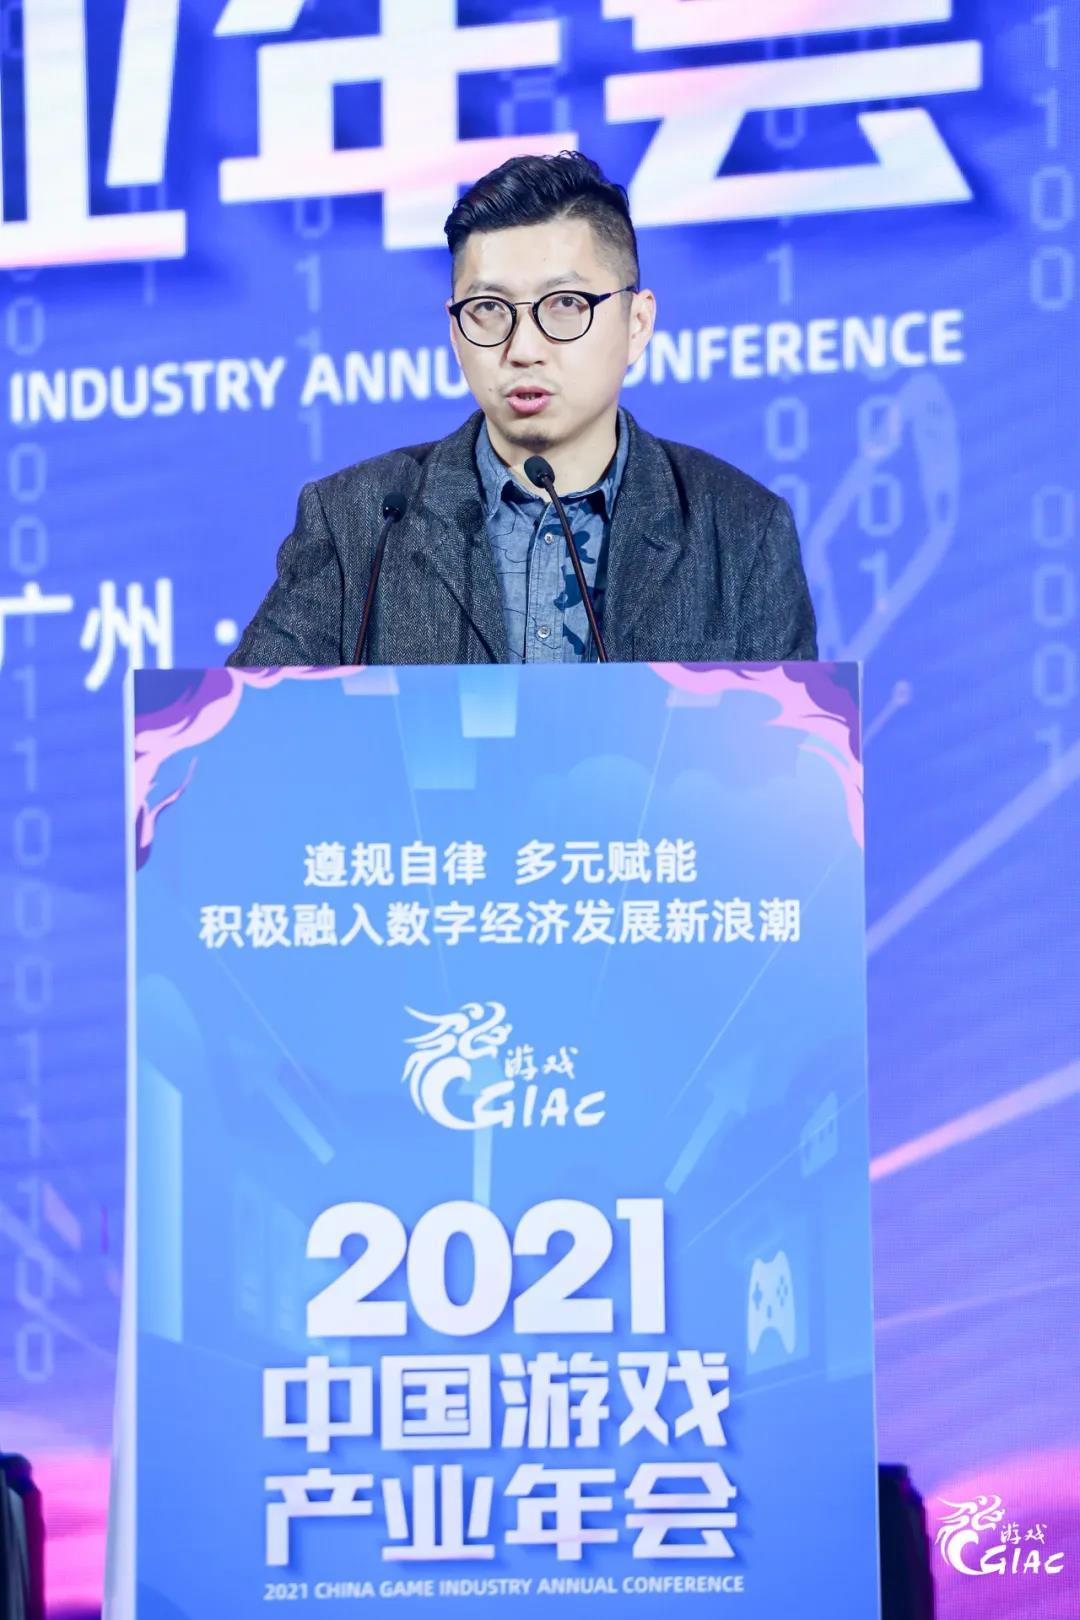 遵规自律 多元赋能 积极融入数字经济发展新浪潮 2021年度中国游戏产业年会圆满举办-有饭研究